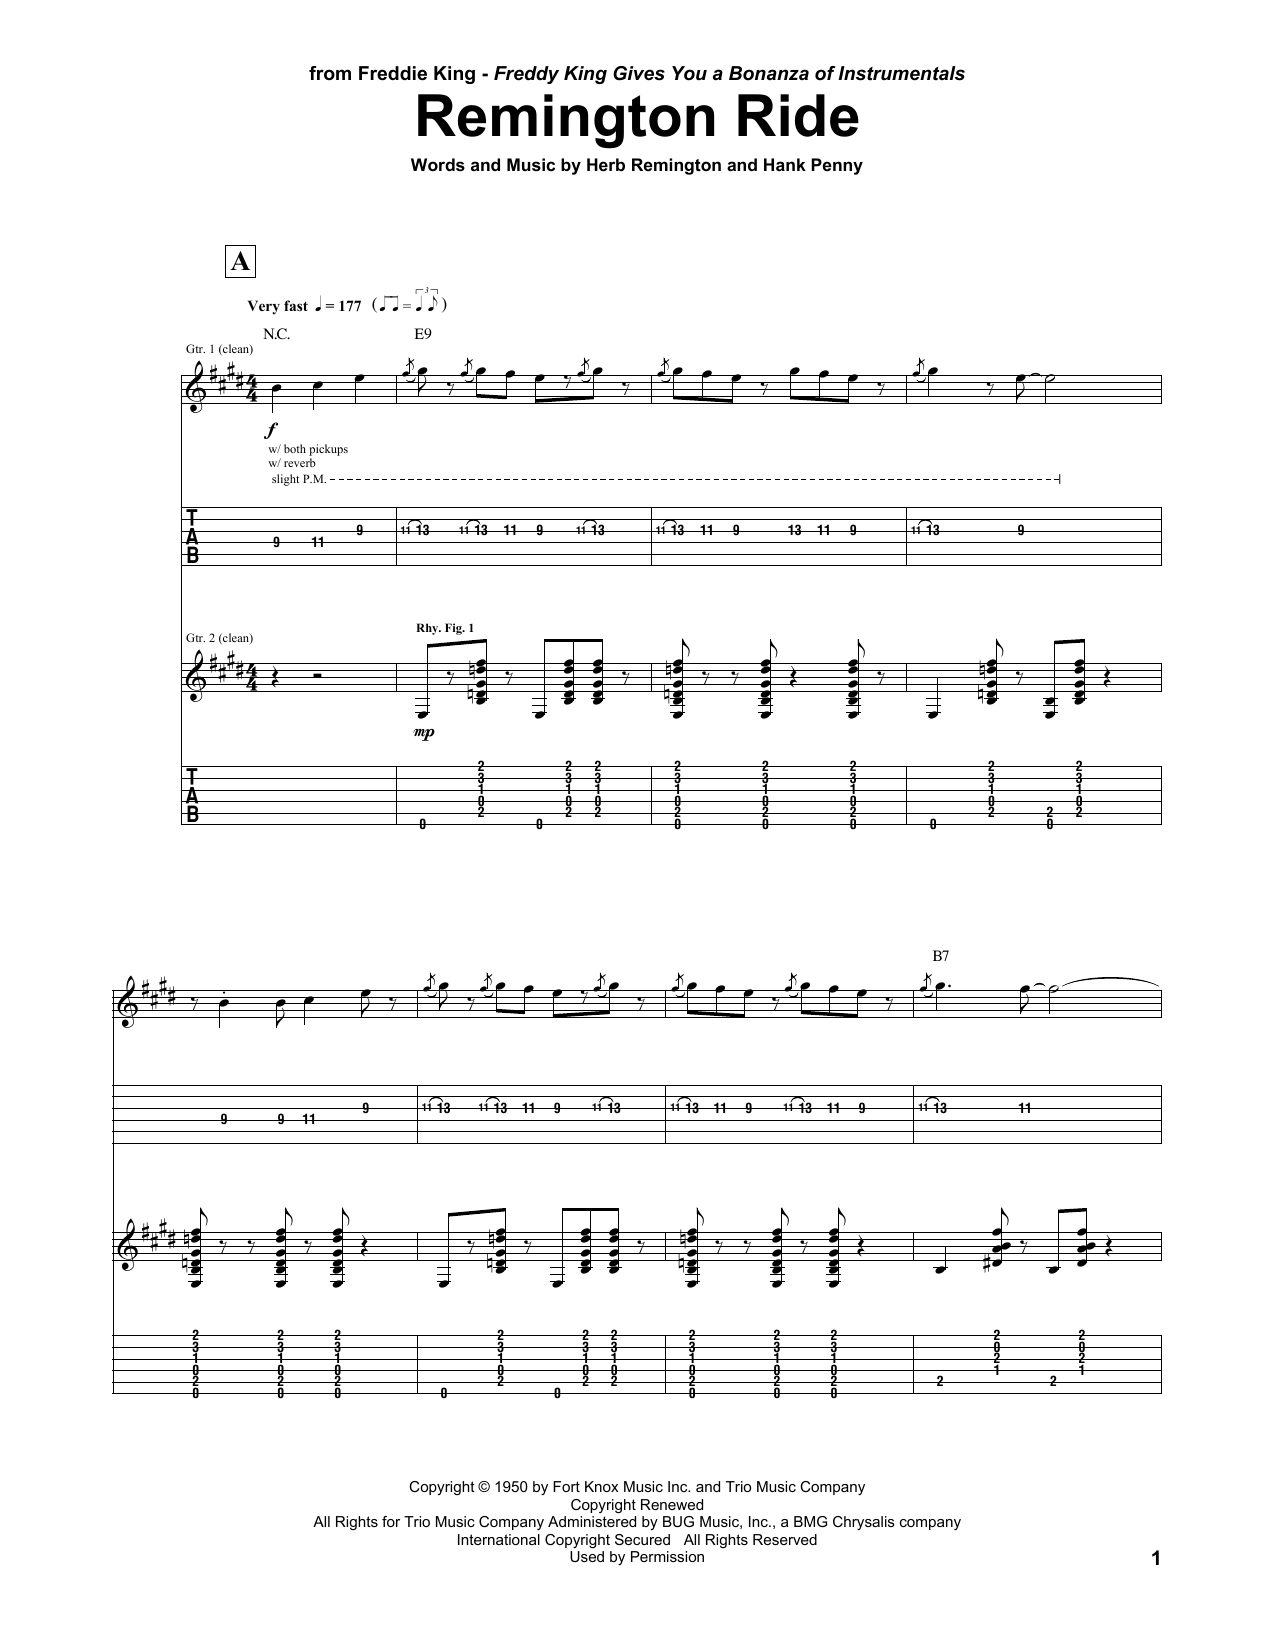 Freddie King Remington Ride Sheet Music Notes & Chords for Guitar Tab - Download or Print PDF